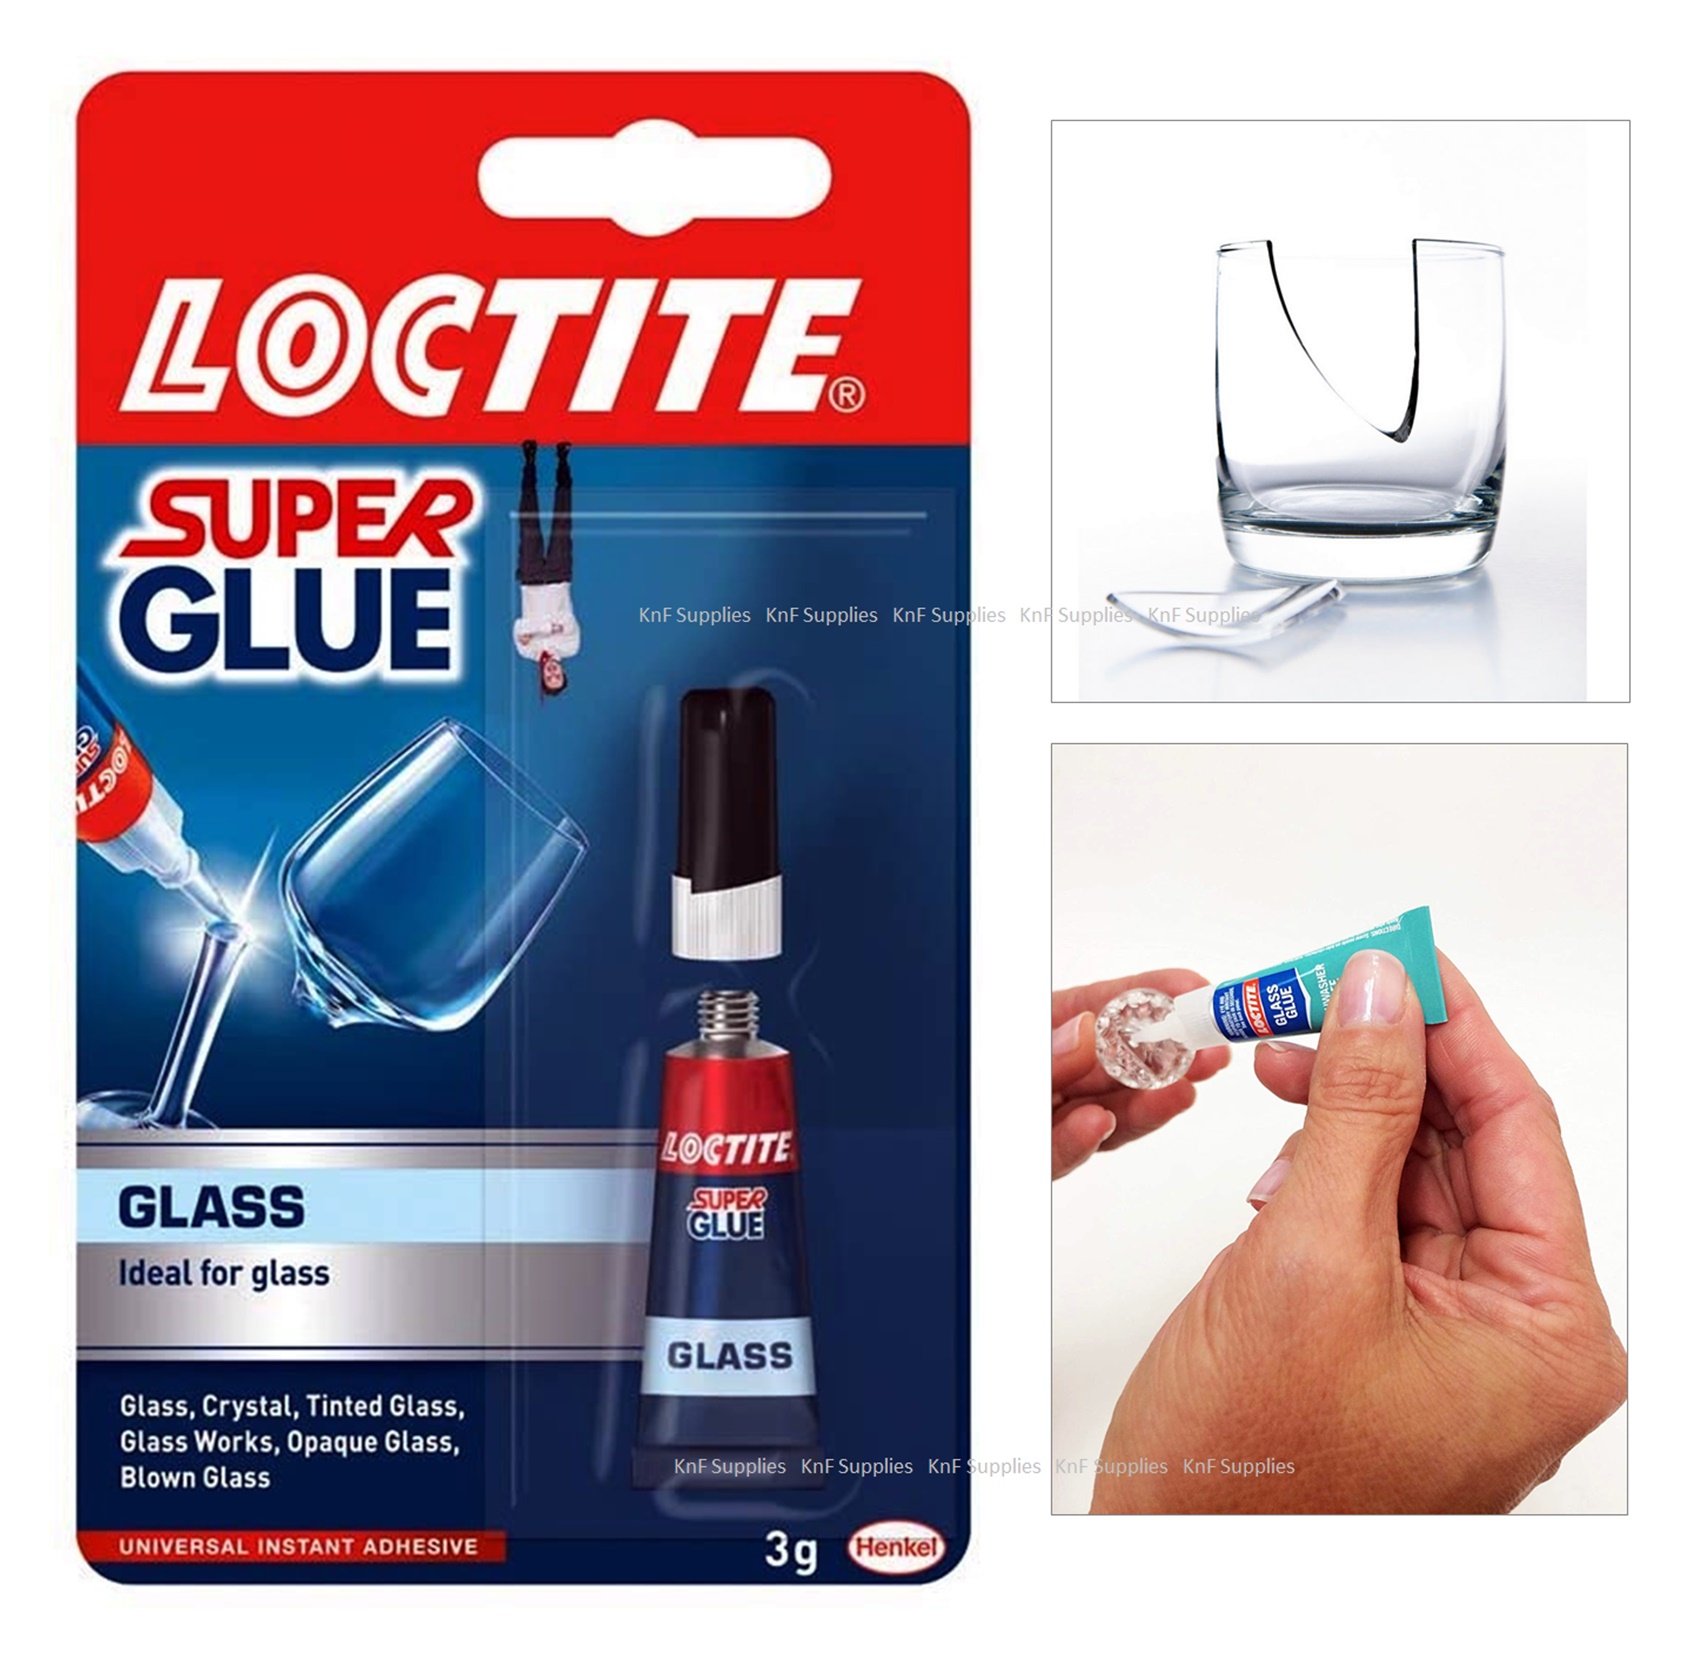 Super glue for glass repair